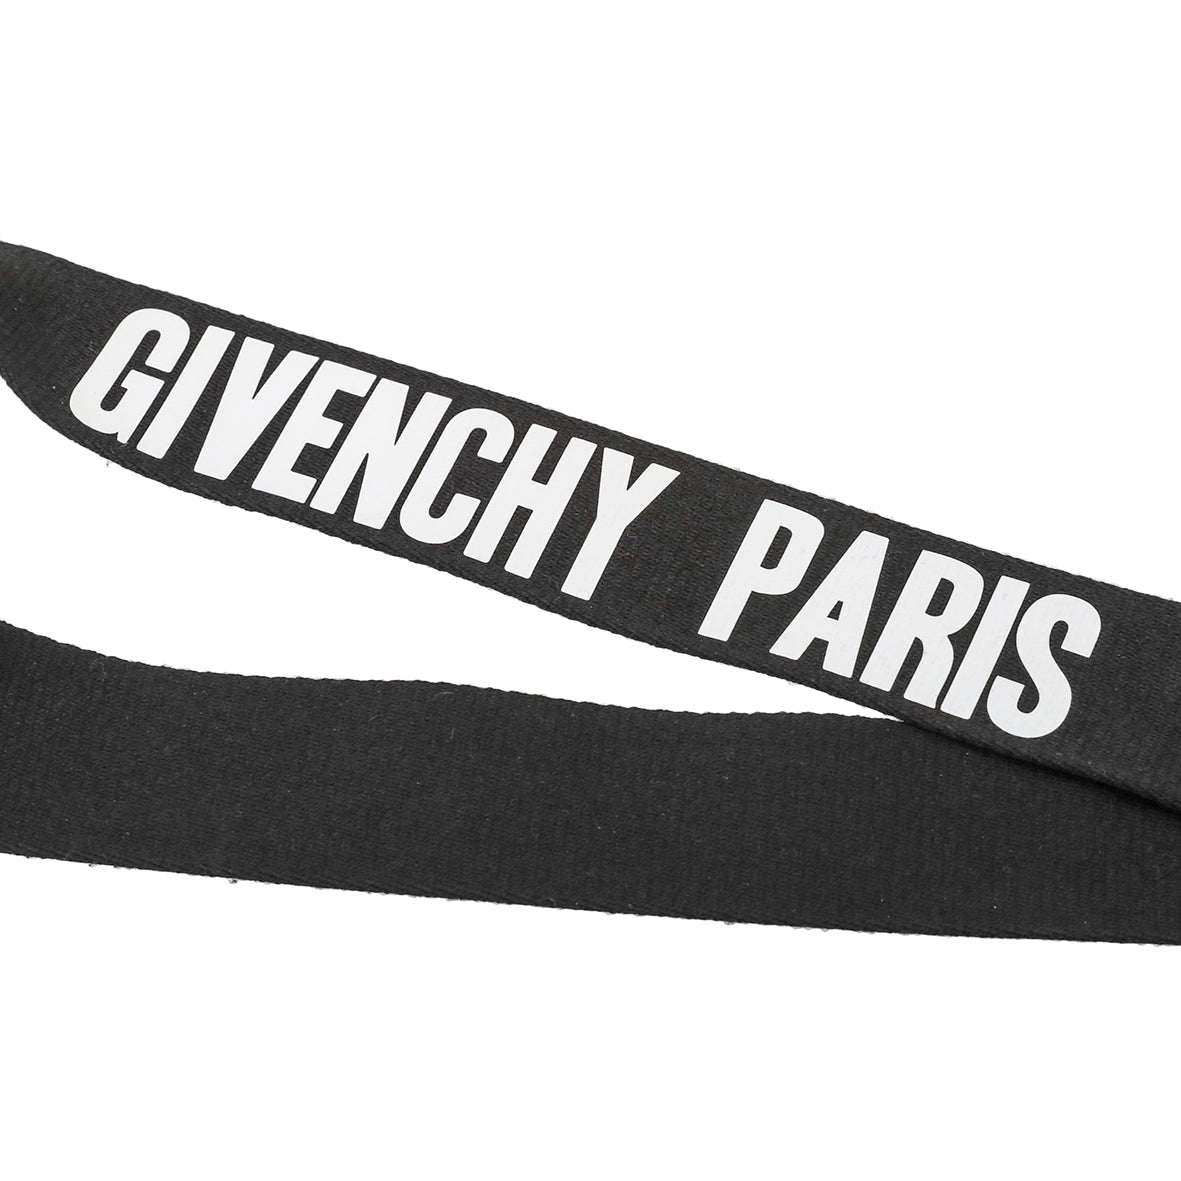 Givenchy Black Key Pendant Lanyard Key Holder